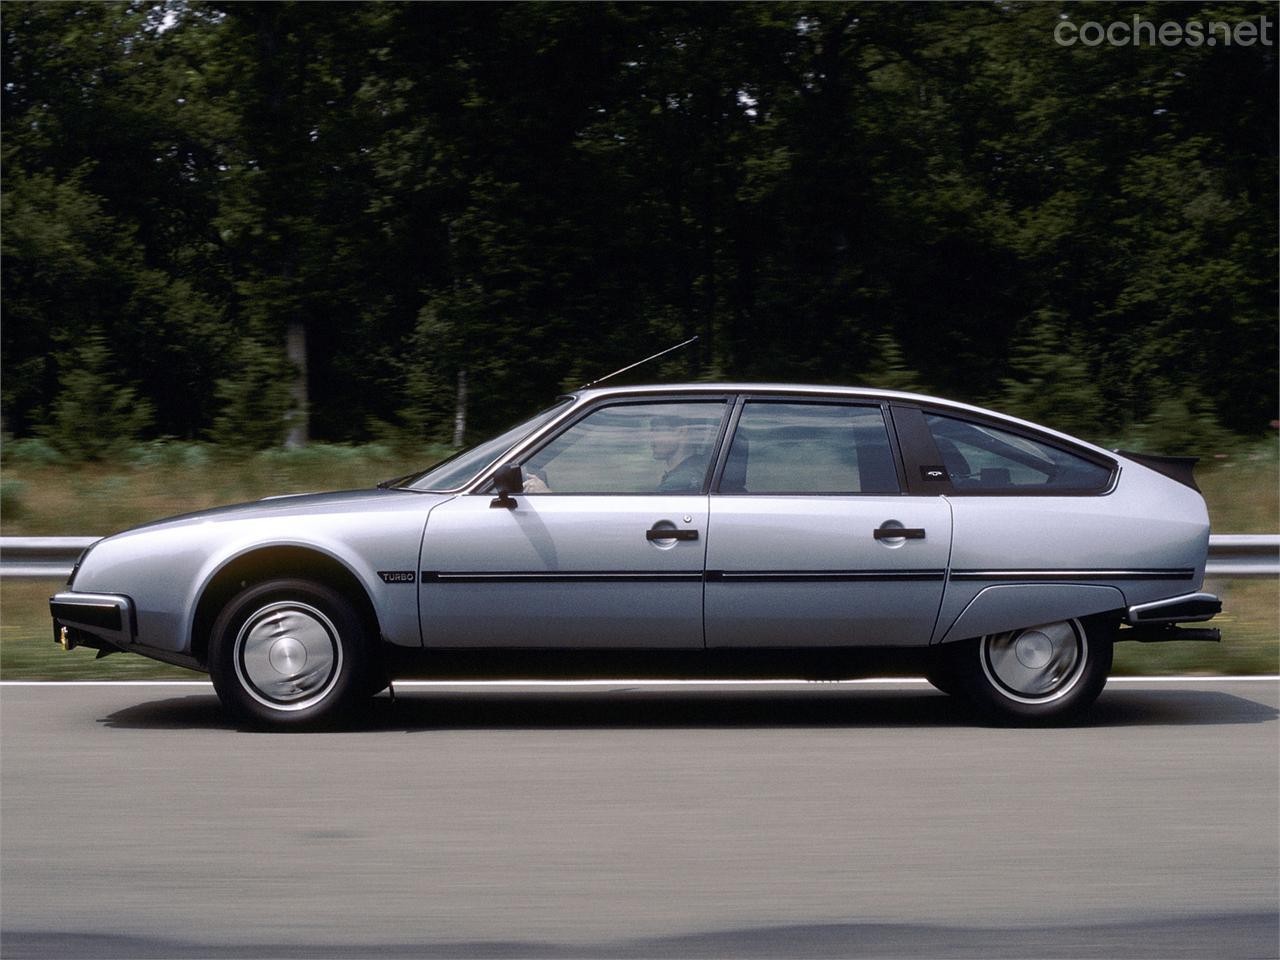 Una de las versiones más atractivas del CX es, sin duda alguna, el GTI Turbo. En llantas, capó delantero, montantes del pilar C y en el interior lucía un logo en forma de "T" por su motor turbo.